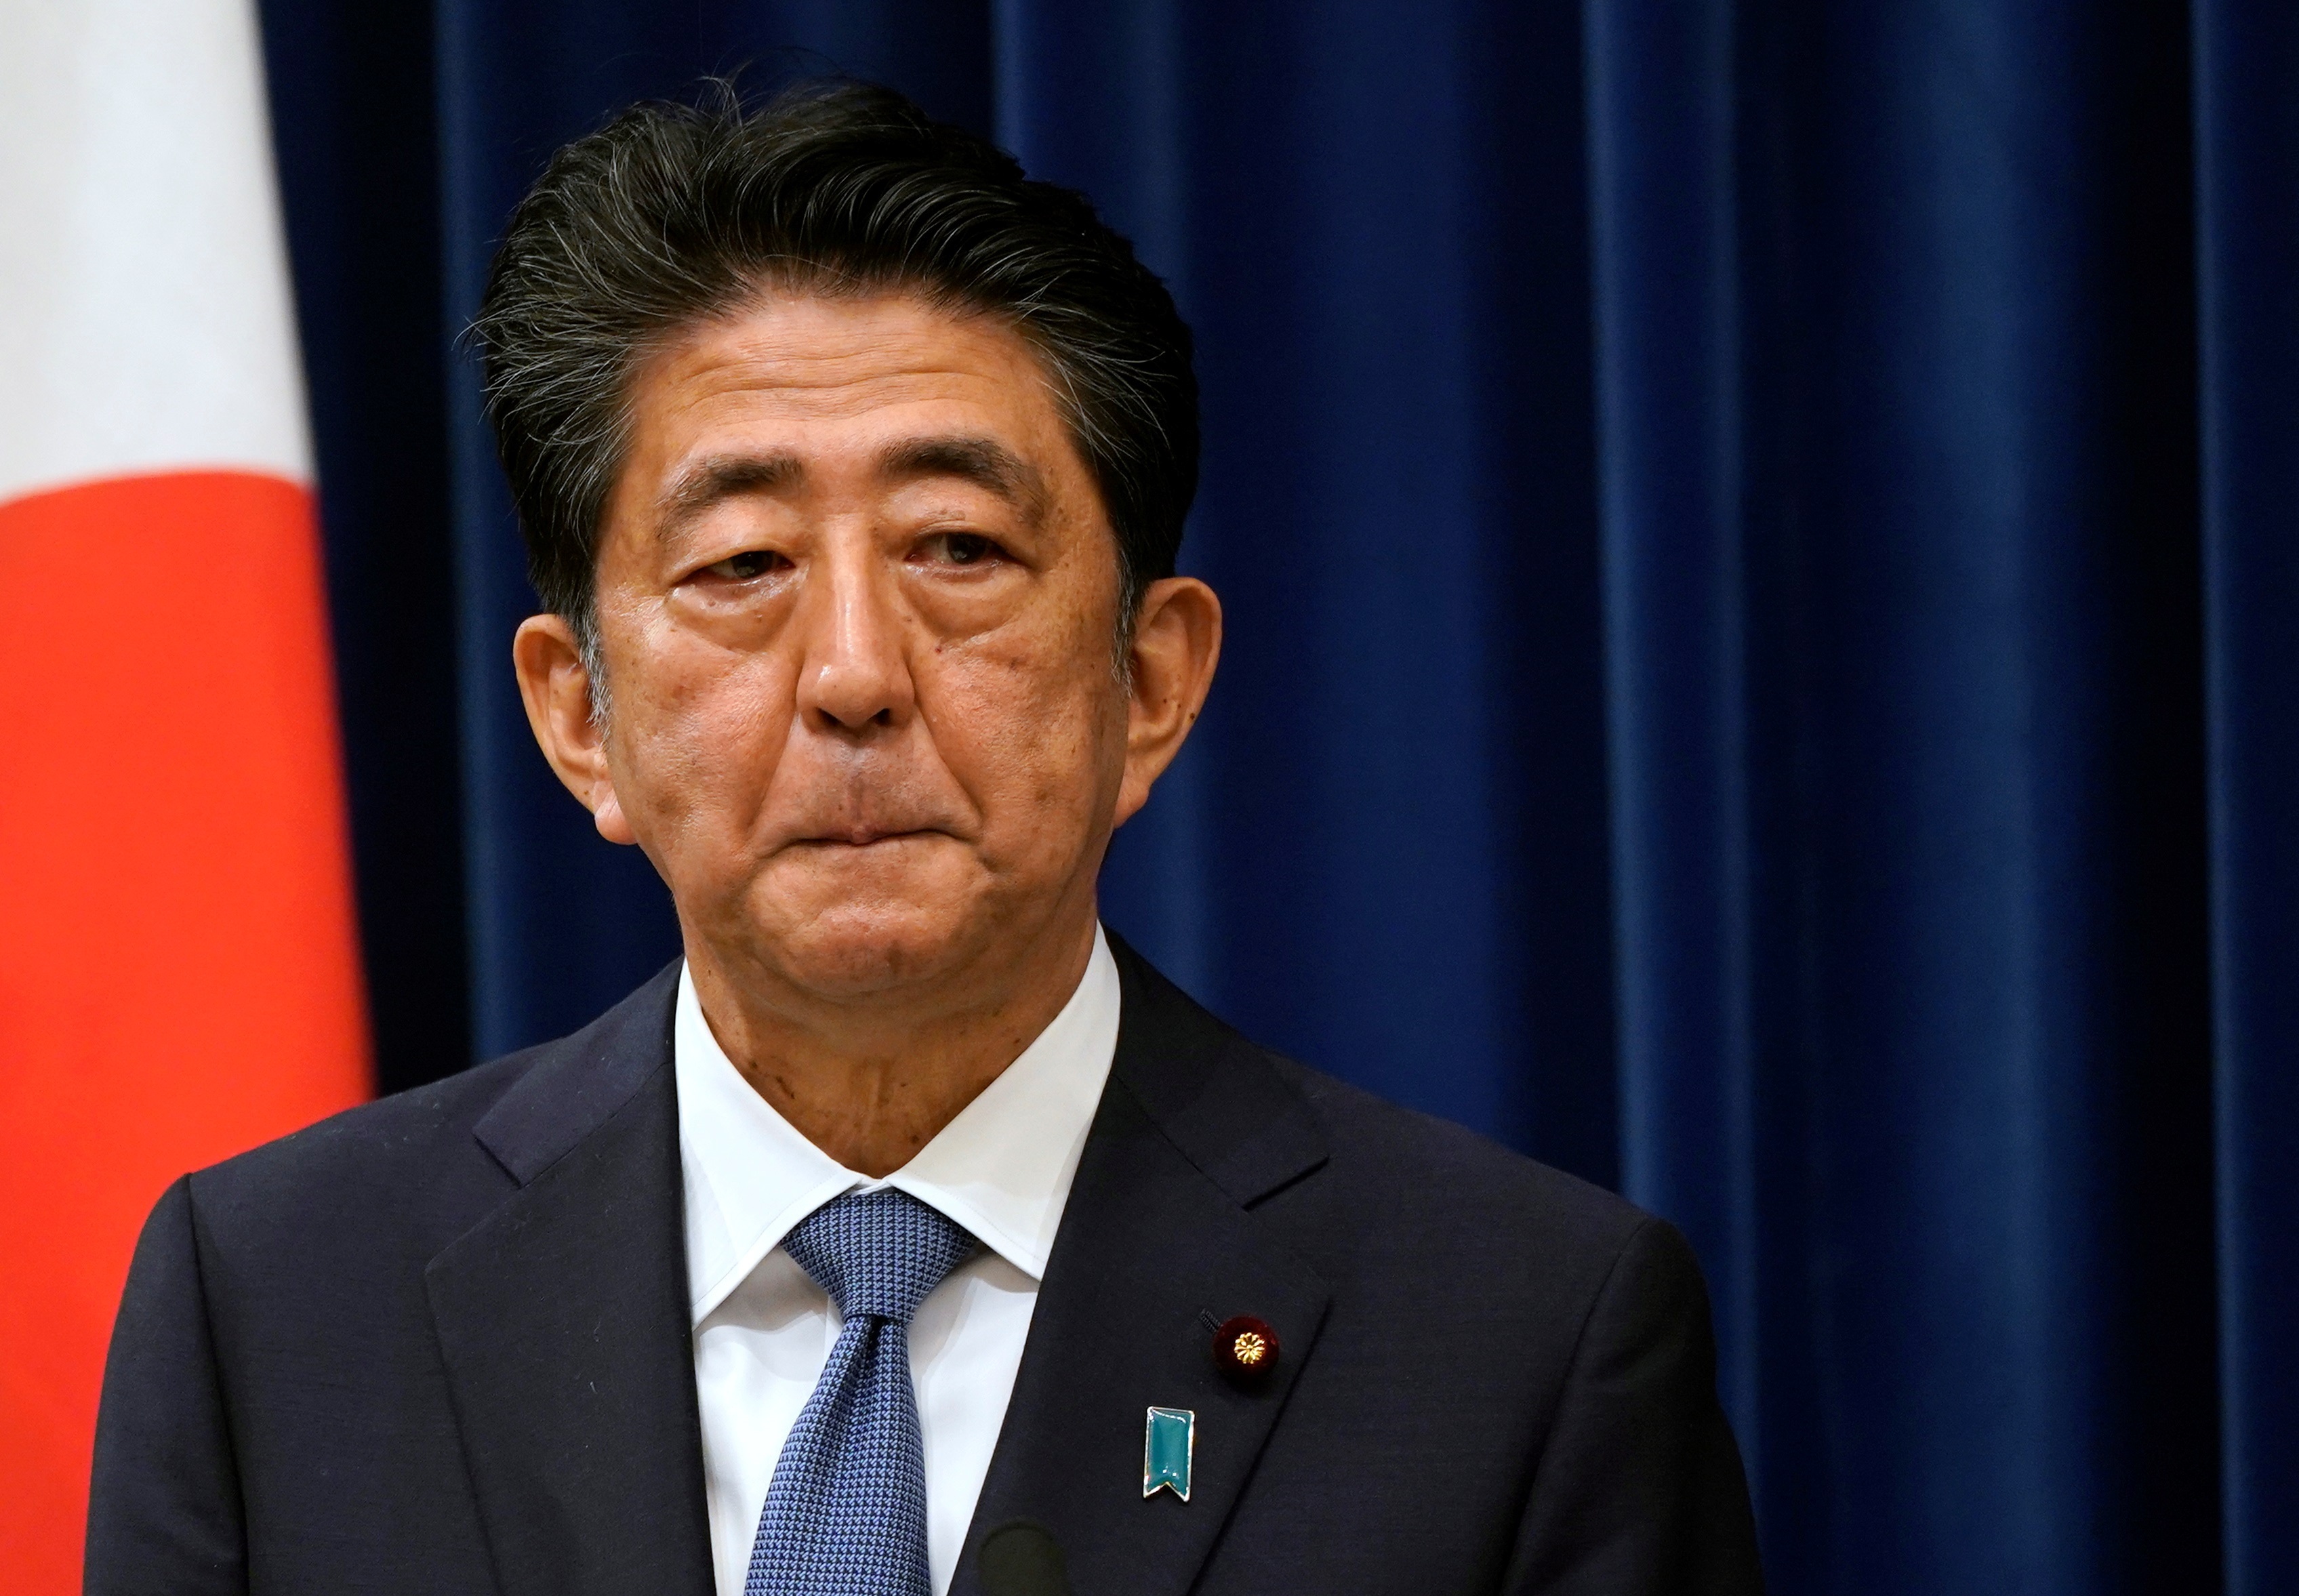 El primer ministro Japón, Shinzo Abe. EFE/Franck Robichon/Archivo
